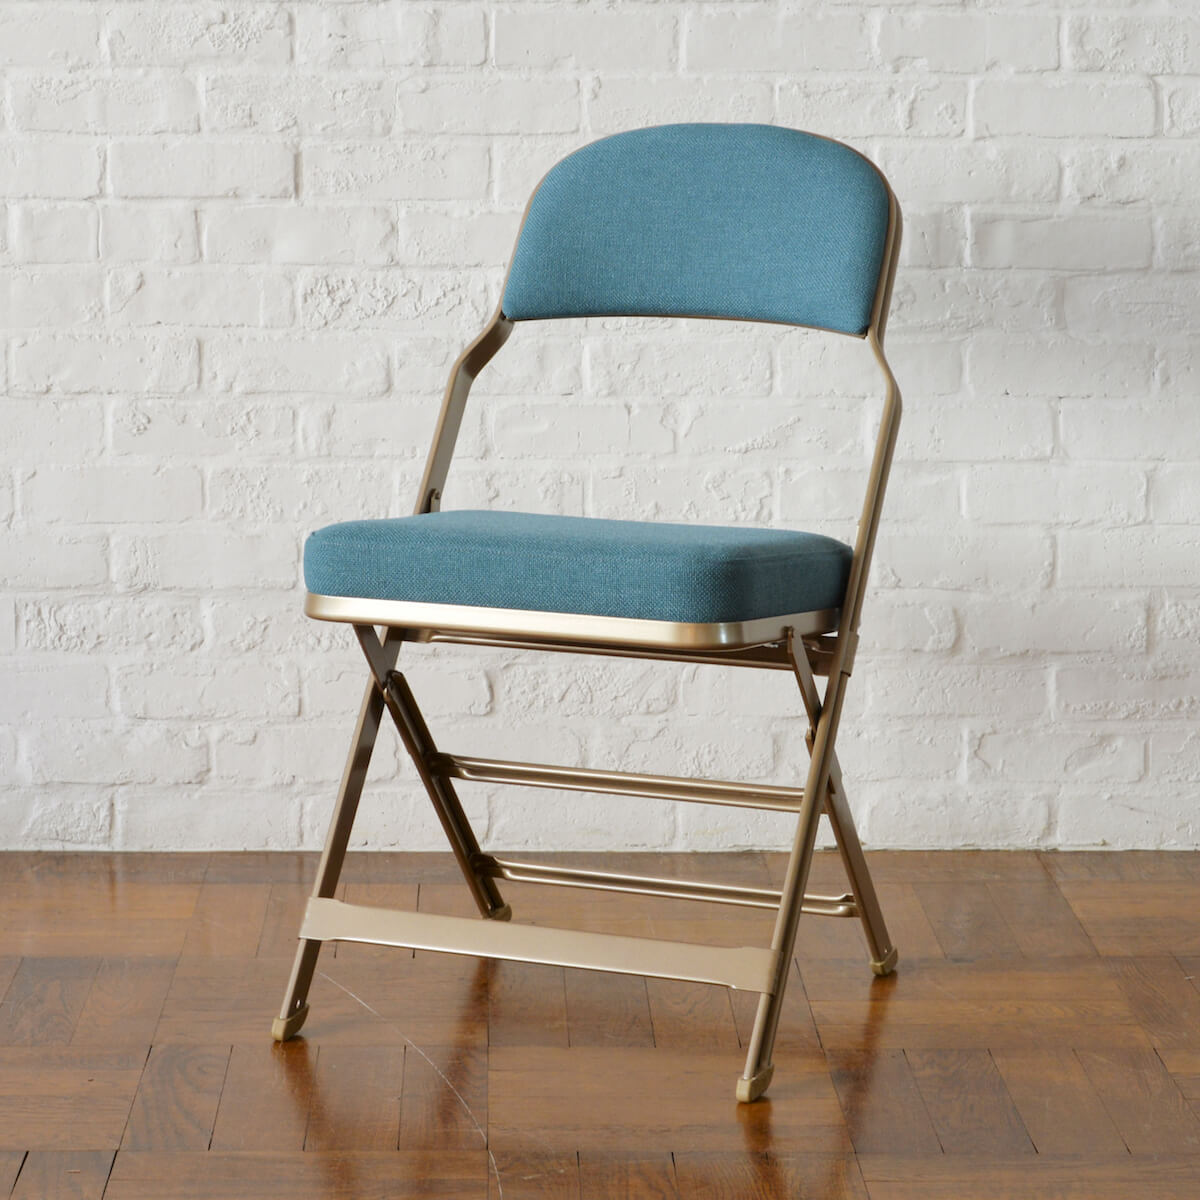 いわば極上のパイプ椅子 フレーム クッションにこだわった Pfsの芸術的折り畳みチェア ガジェット通信 Getnews